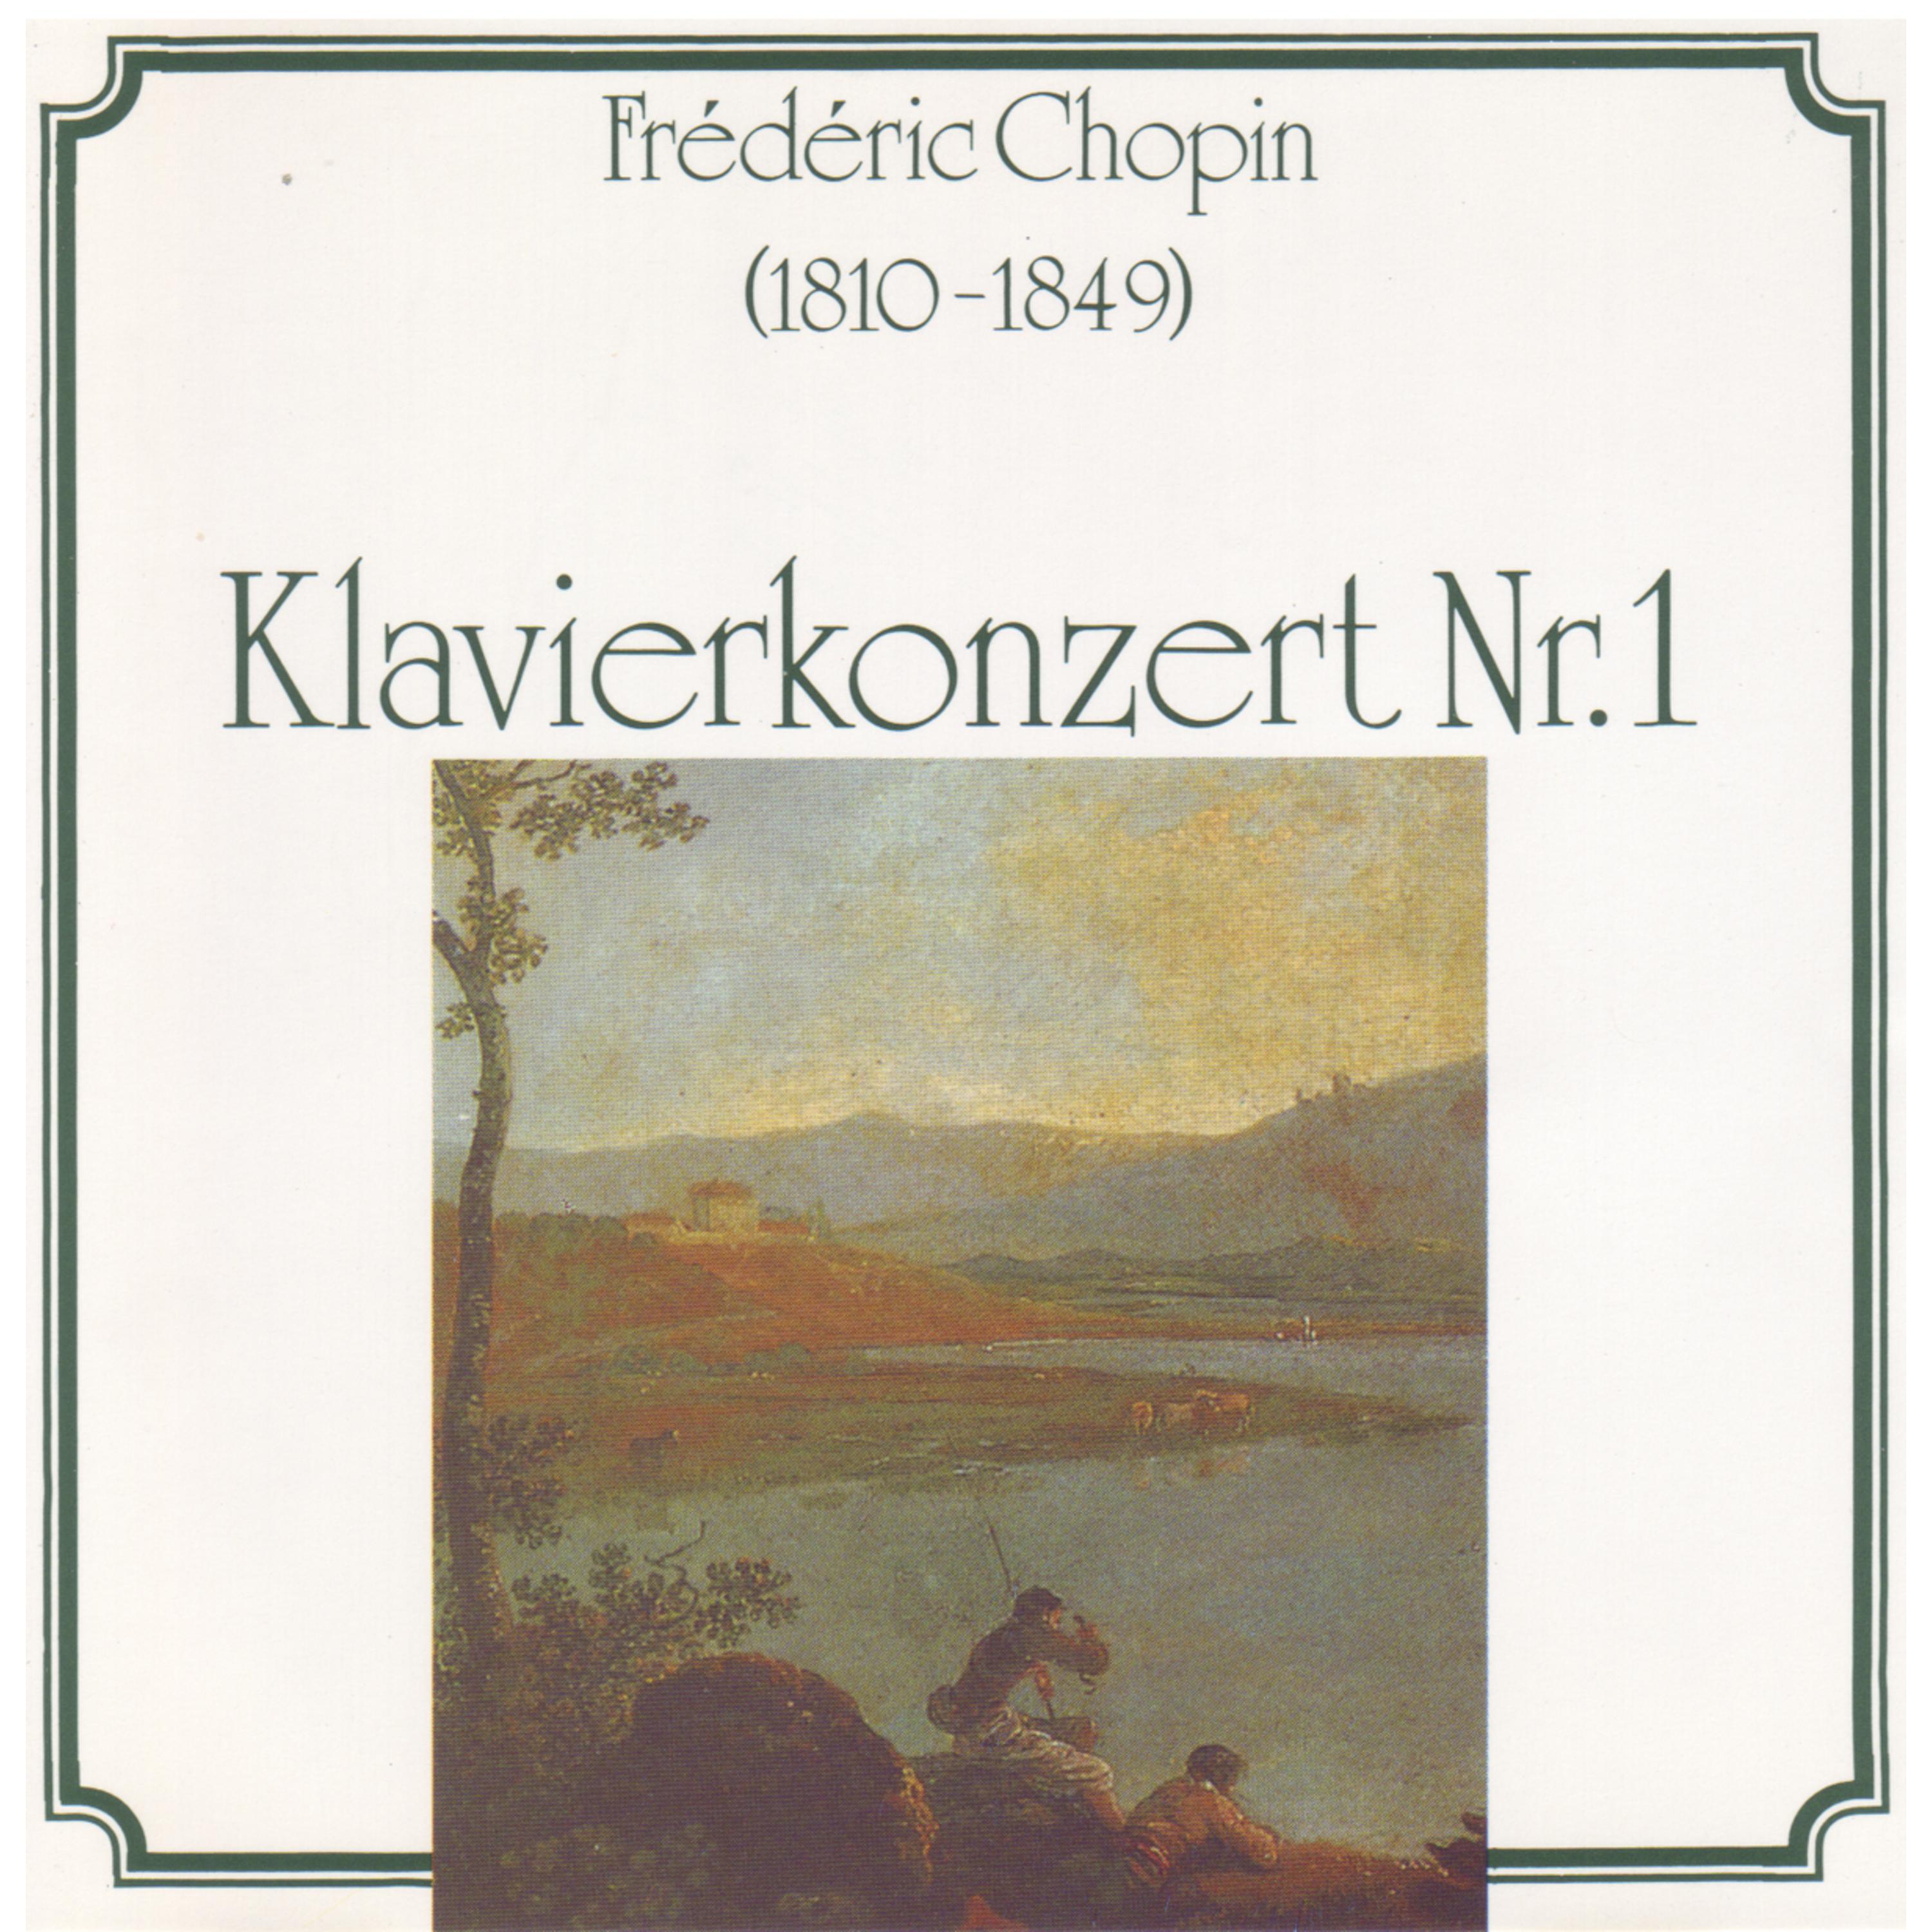 Pre lude fü r Klavier in A Major, Op. 28, No. 7